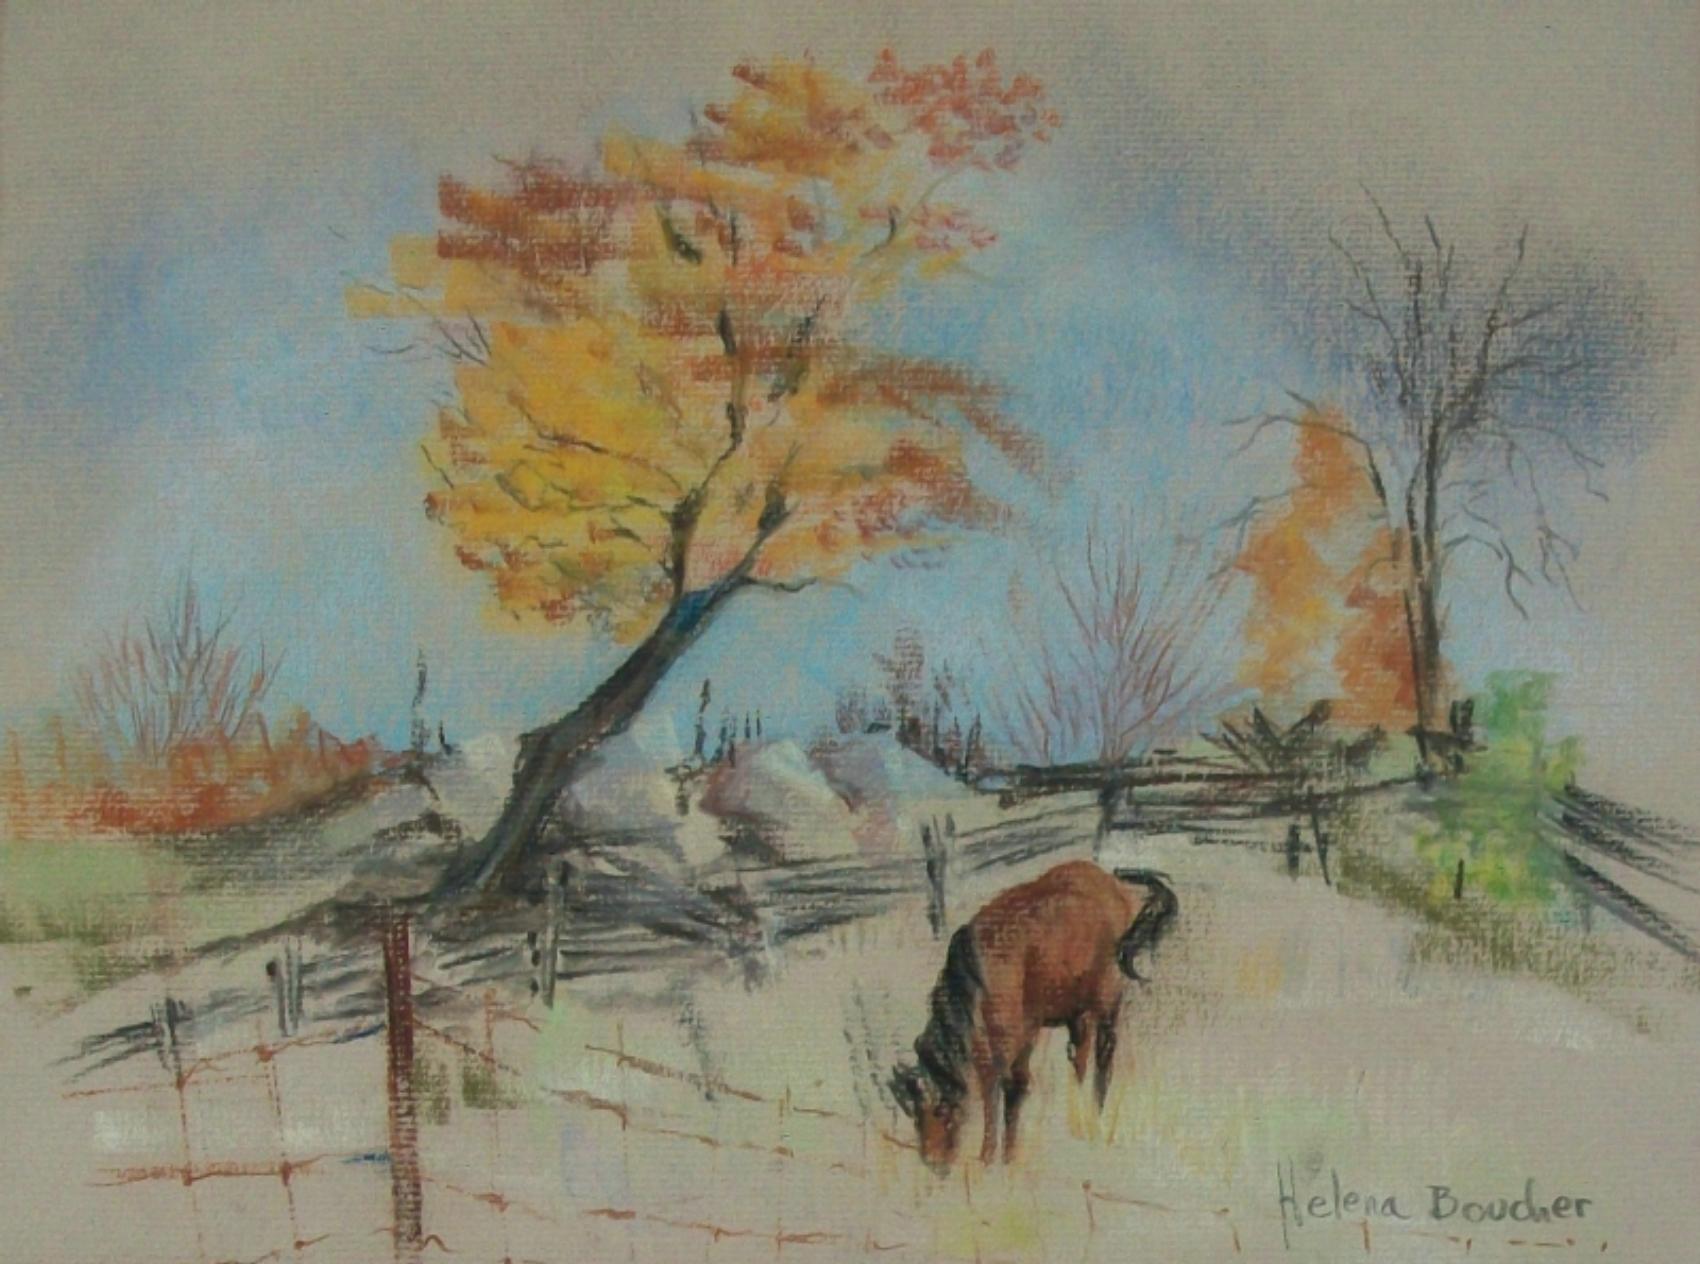 HELENA BOUCHER (Unbekannter/Unbekannter Künstler) - Vintage-Pastell-Landschaftszeichnung auf chamoisfarbenem Papier - mit einem Pferd im Vordergrund vor Bäumen und einem Zaun - Zeichnung in einer Vintage-Doppelmatte - signiert unten rechts - Kanada